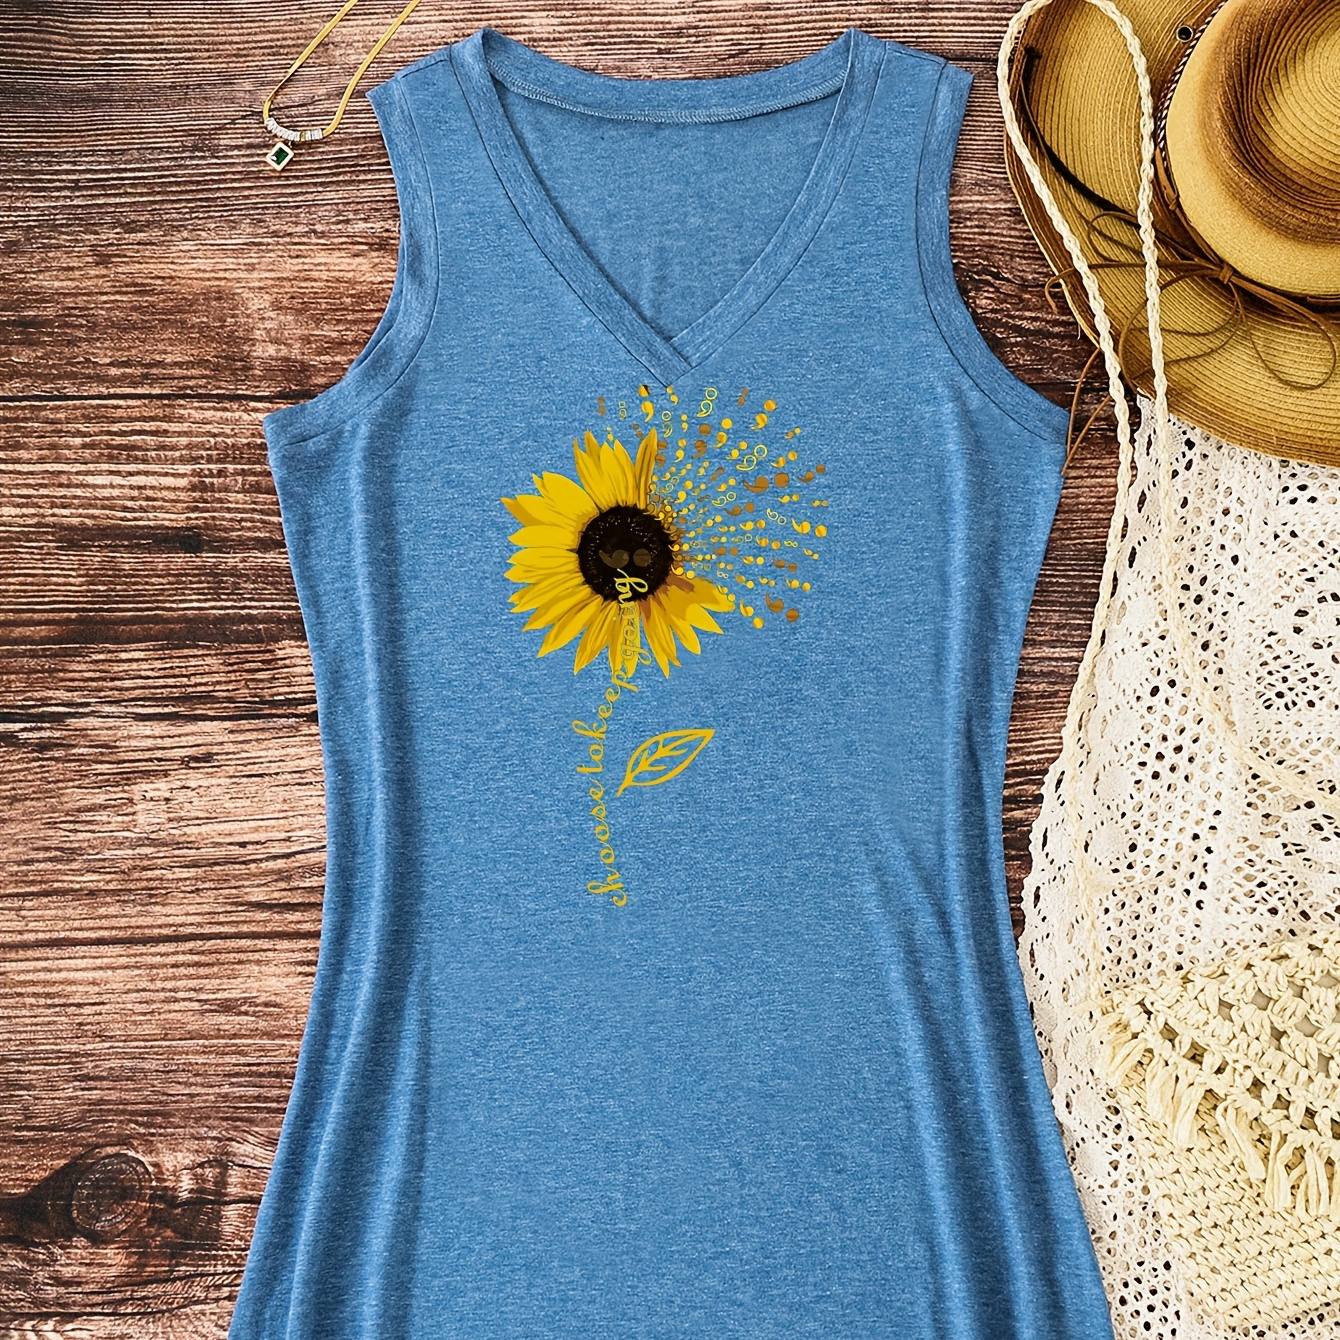 

Sunflower Print V-neck Tank Dress, Casual Sleeveless Dress For Spring & Summer, Women's Clothing